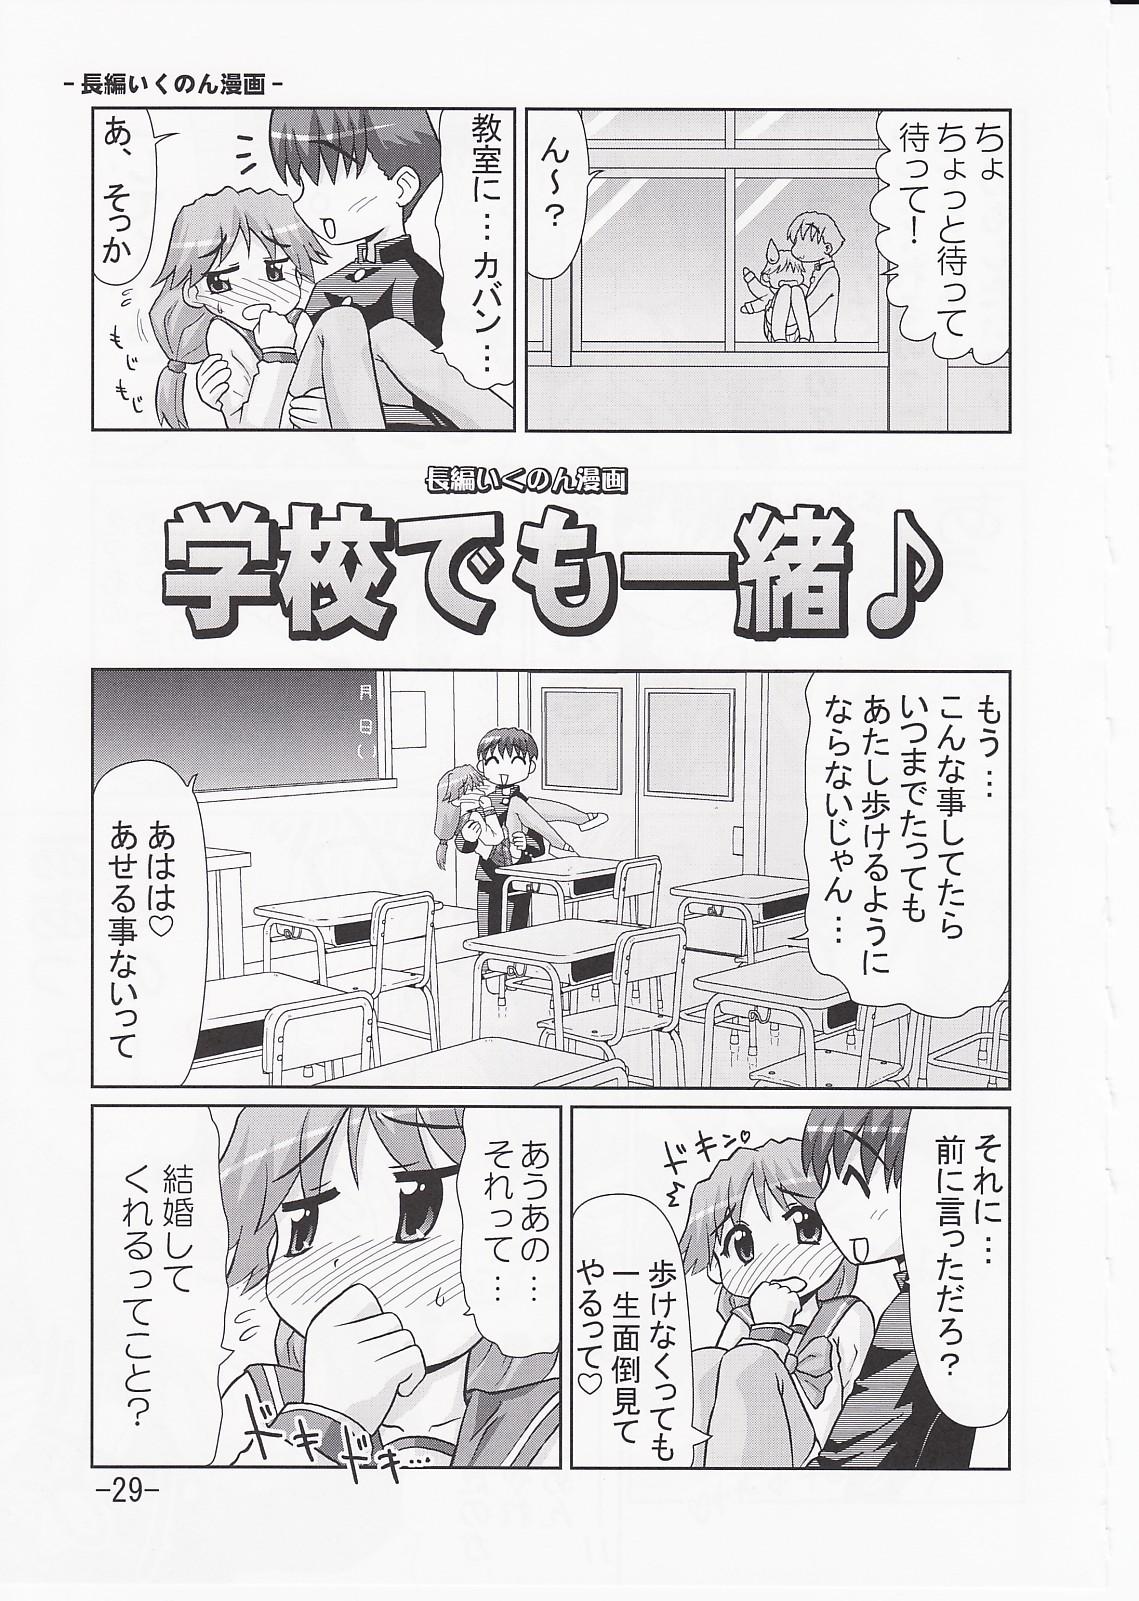 Ikunon Manga 3 27